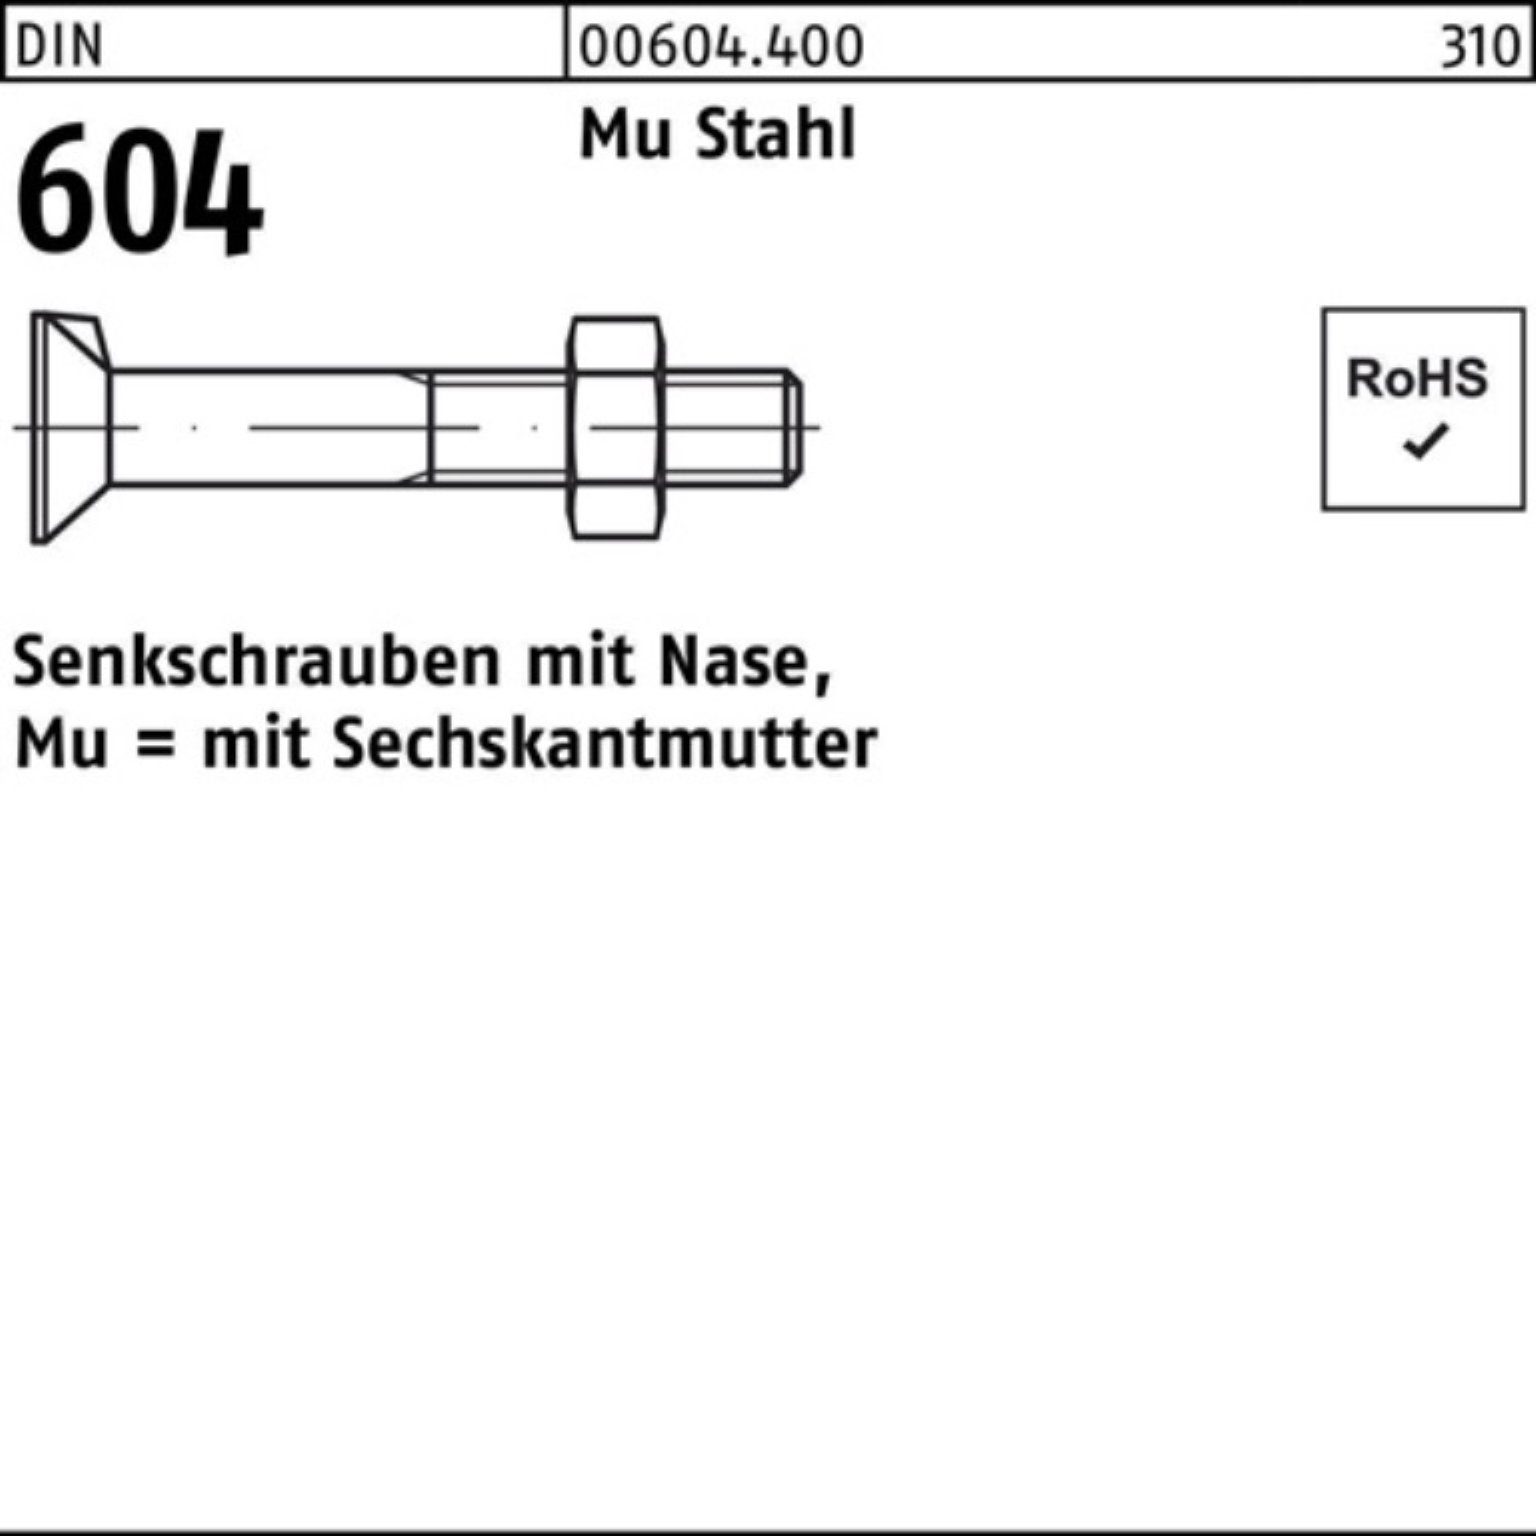 Reyher Senkschraube 100er Pack Senkschraube DIN 604 Nase/6-ktmutter M24x 65 Mu Stahl 4.6 2